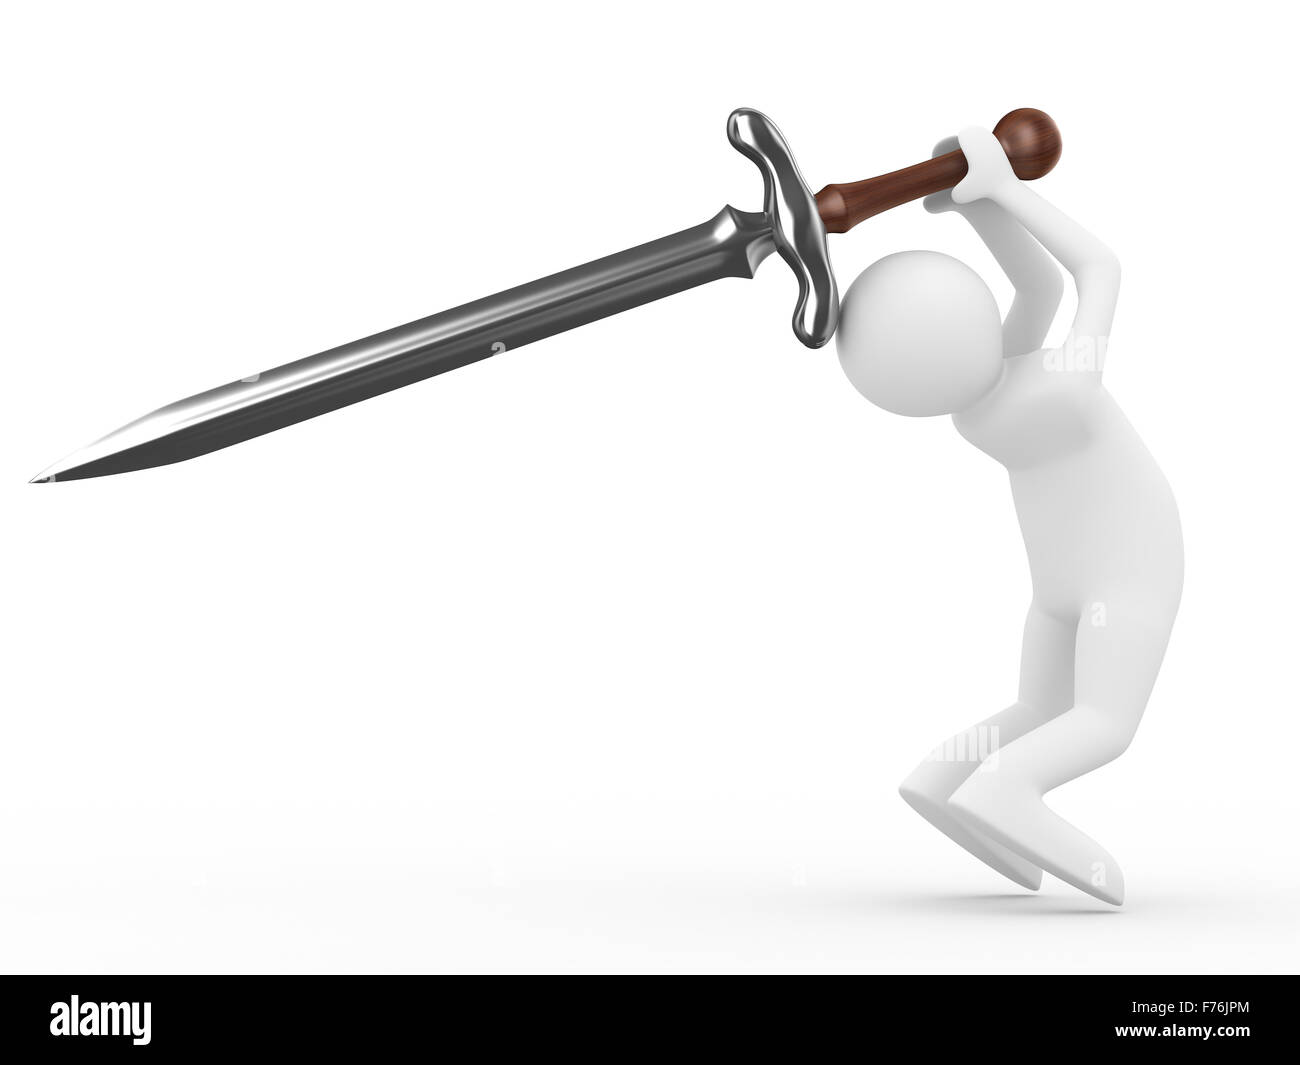 Caballero con espada sobre fondo blanco. Aislados imagen 3D Foto de stock